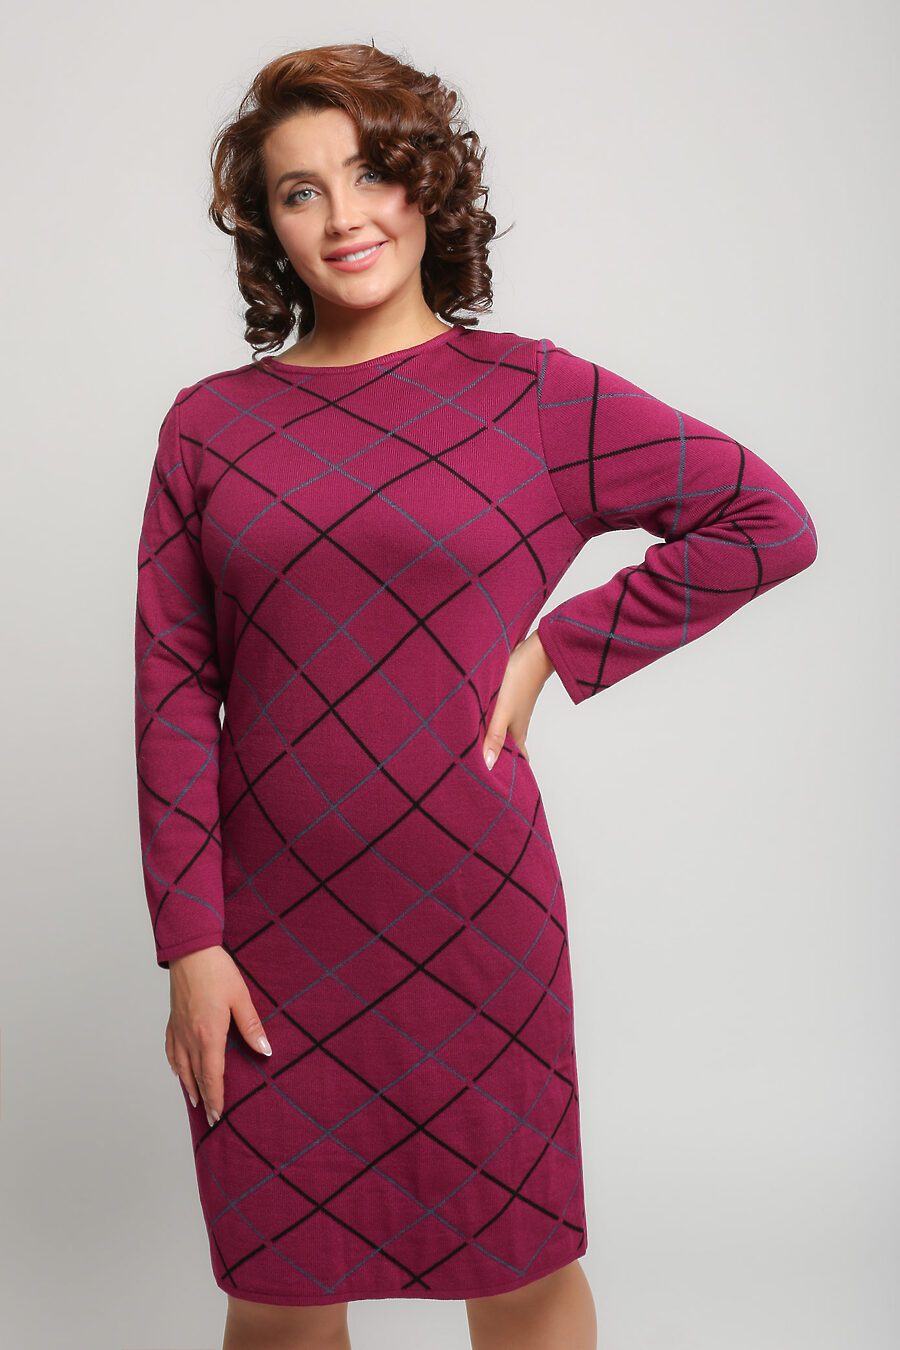 Платье для женщин СТИЛЬ 785356 купить оптом от производителя. Совместная покупка женской одежды в OptMoyo